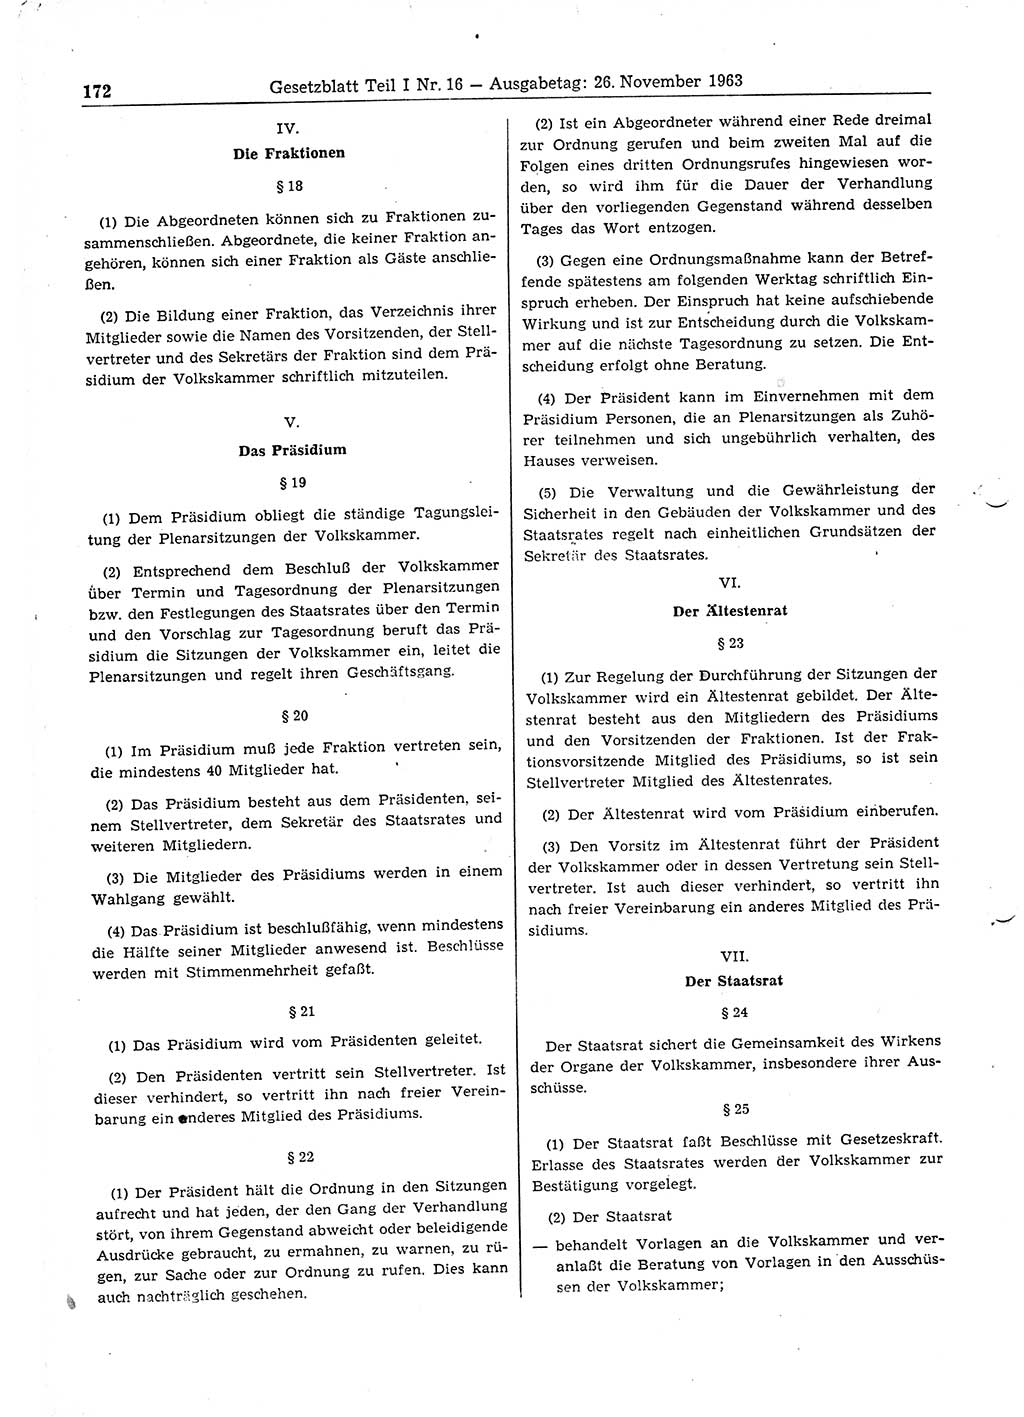 Gesetzblatt (GBl.) der Deutschen Demokratischen Republik (DDR) Teil Ⅰ 1963, Seite 172 (GBl. DDR Ⅰ 1963, S. 172)